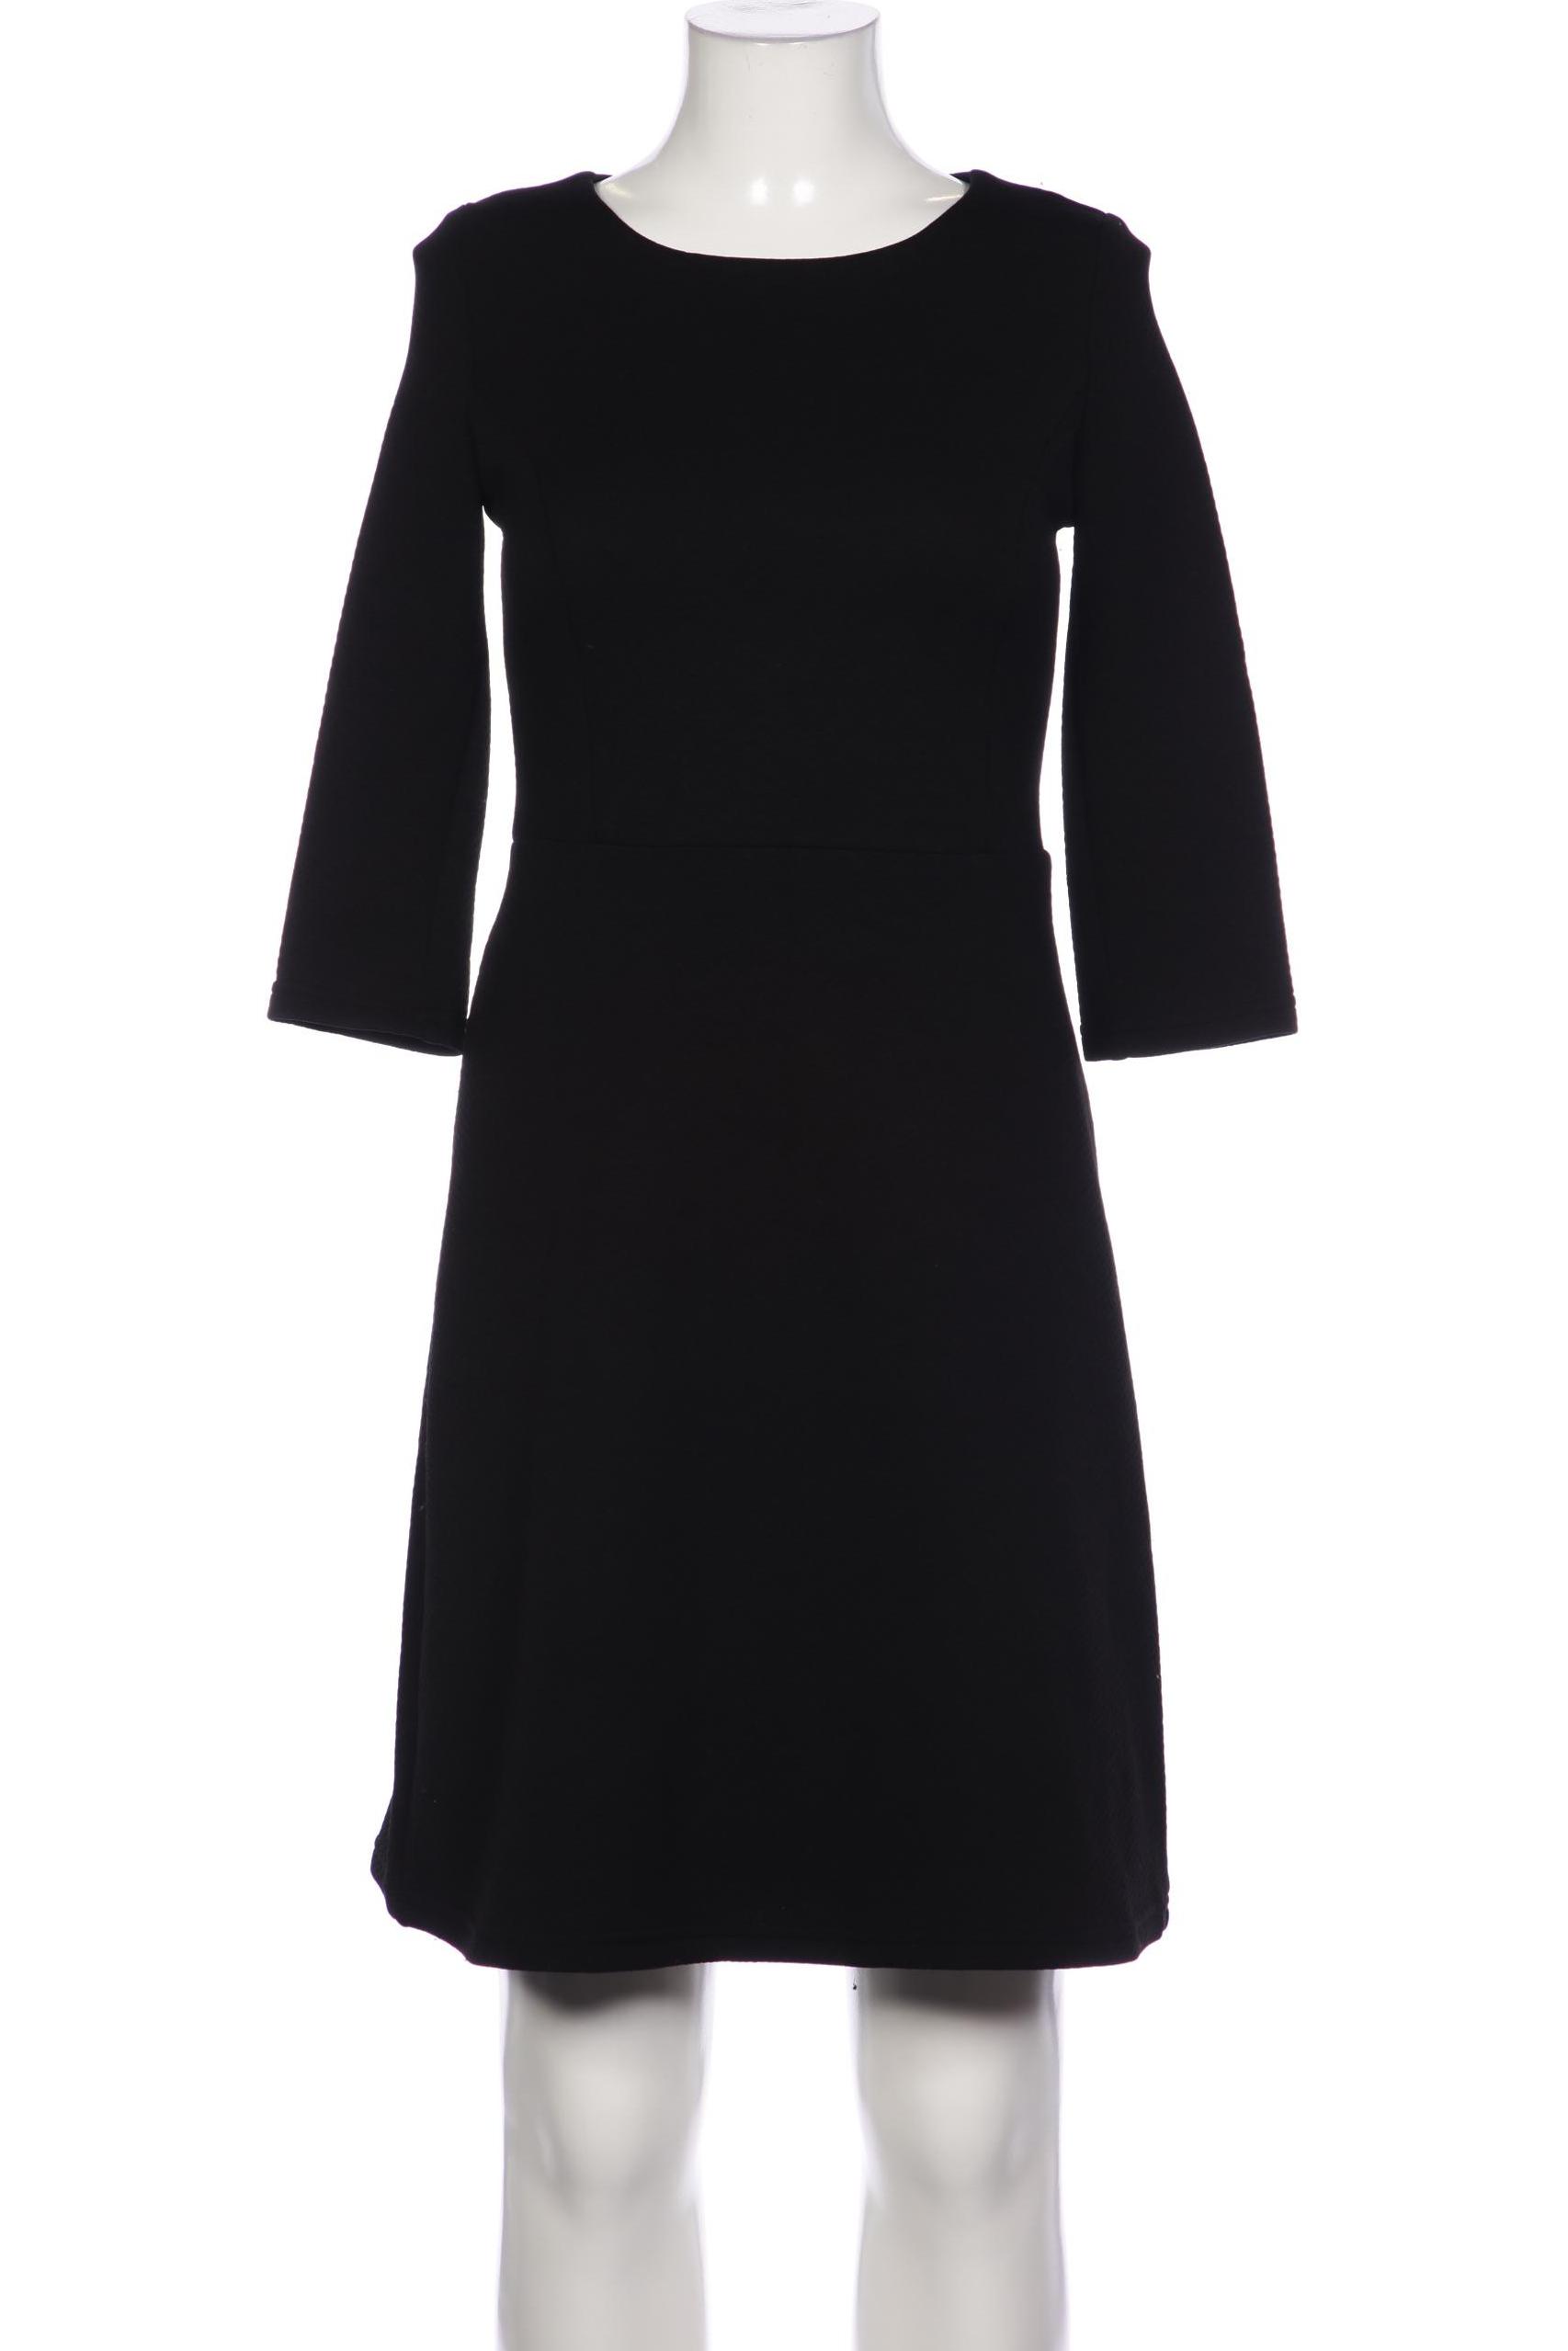 Montego Damen Kleid, schwarz von montego